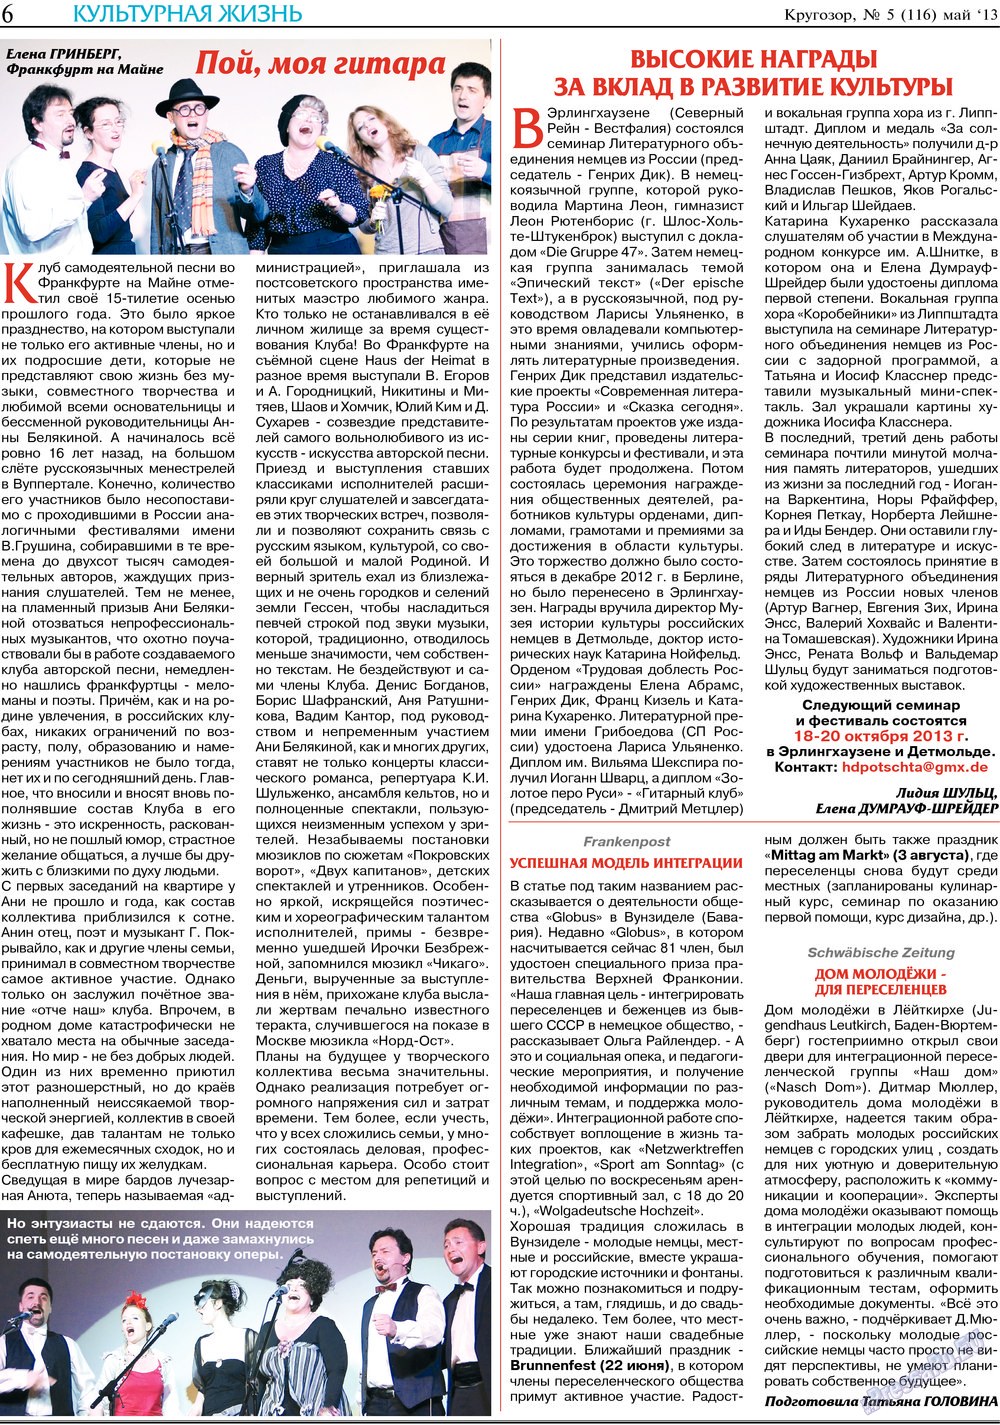 Кругозор (газета). 2013 год, номер 5, стр. 6